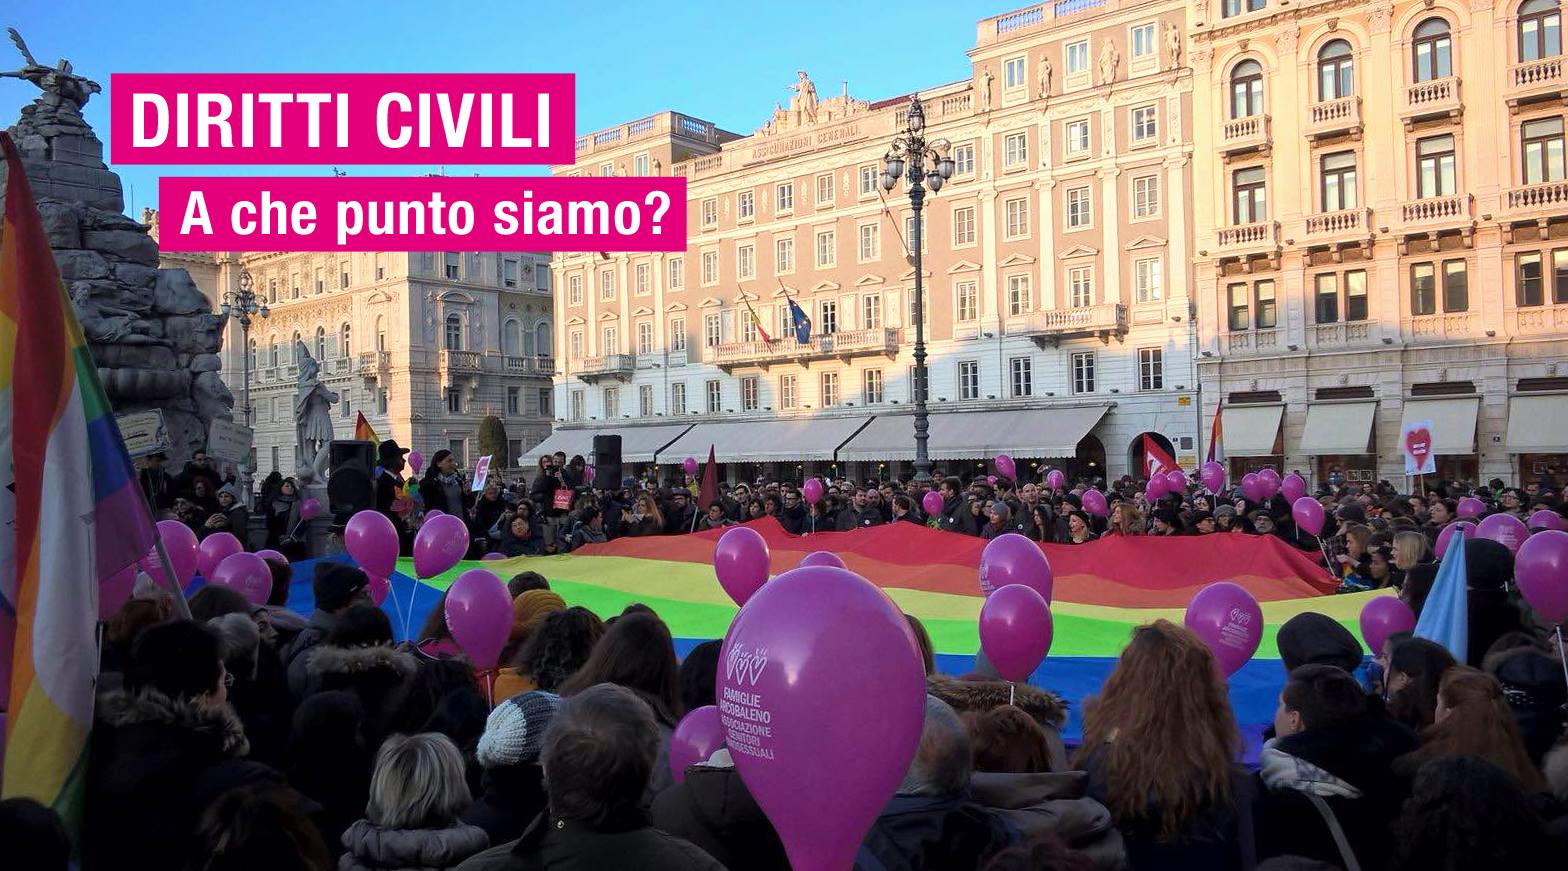 11.03.16 Trieste: “Diritti civili. A che punto siamo?”